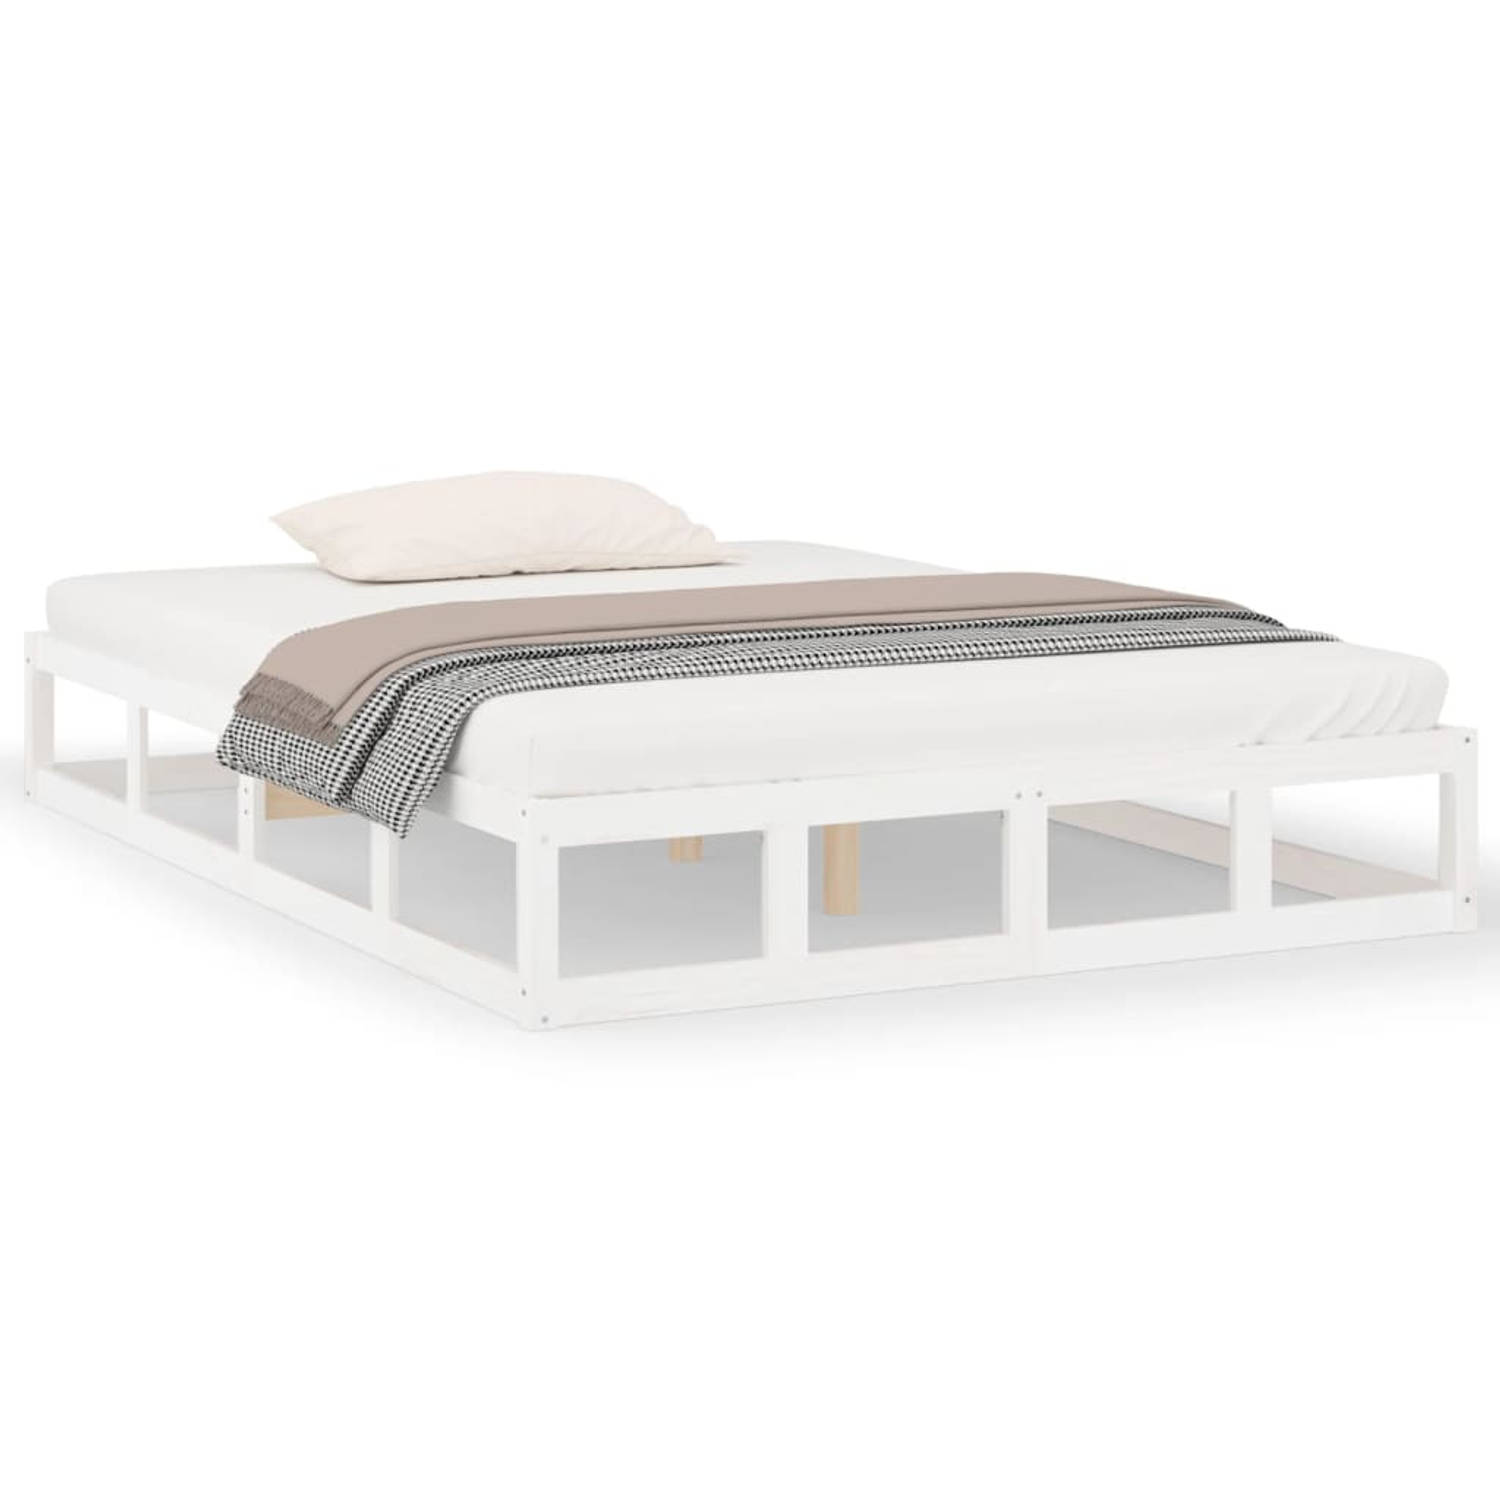 The Living Store Bedframe massief hout wit 140x190 cm - Bedframe - Bedframes - Bed - Bedbodem - Ledikant - Bed Frame - Massief Houten Bedframe - Slaapmeubel - Tweepersoonsbed - Bed